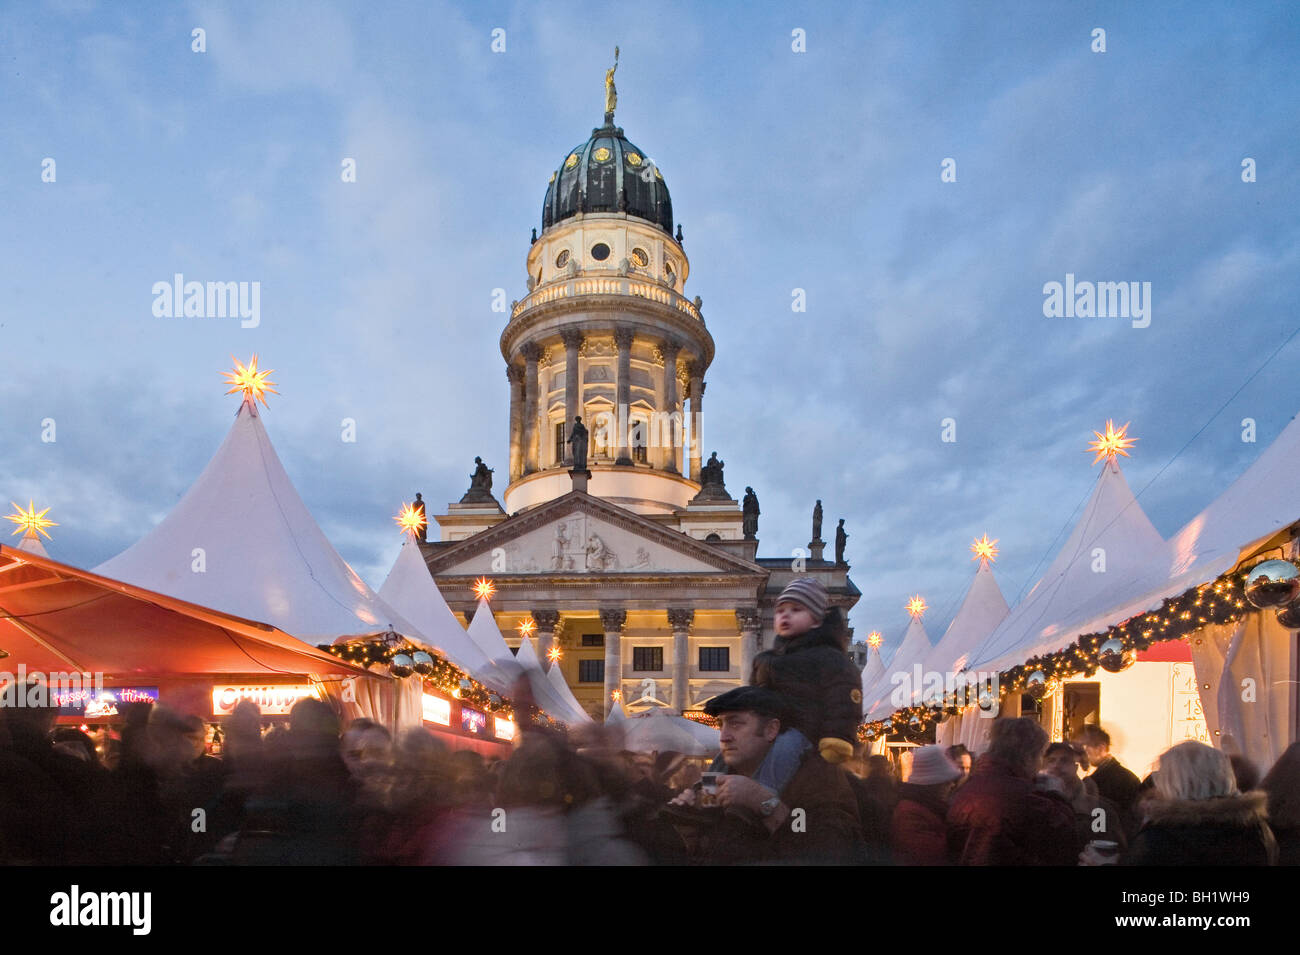 Weihnachtsmarkt, Deutscher Dom, Gendarmenmarkt, in der Nacht, Berlin, Deutschland Stockfoto